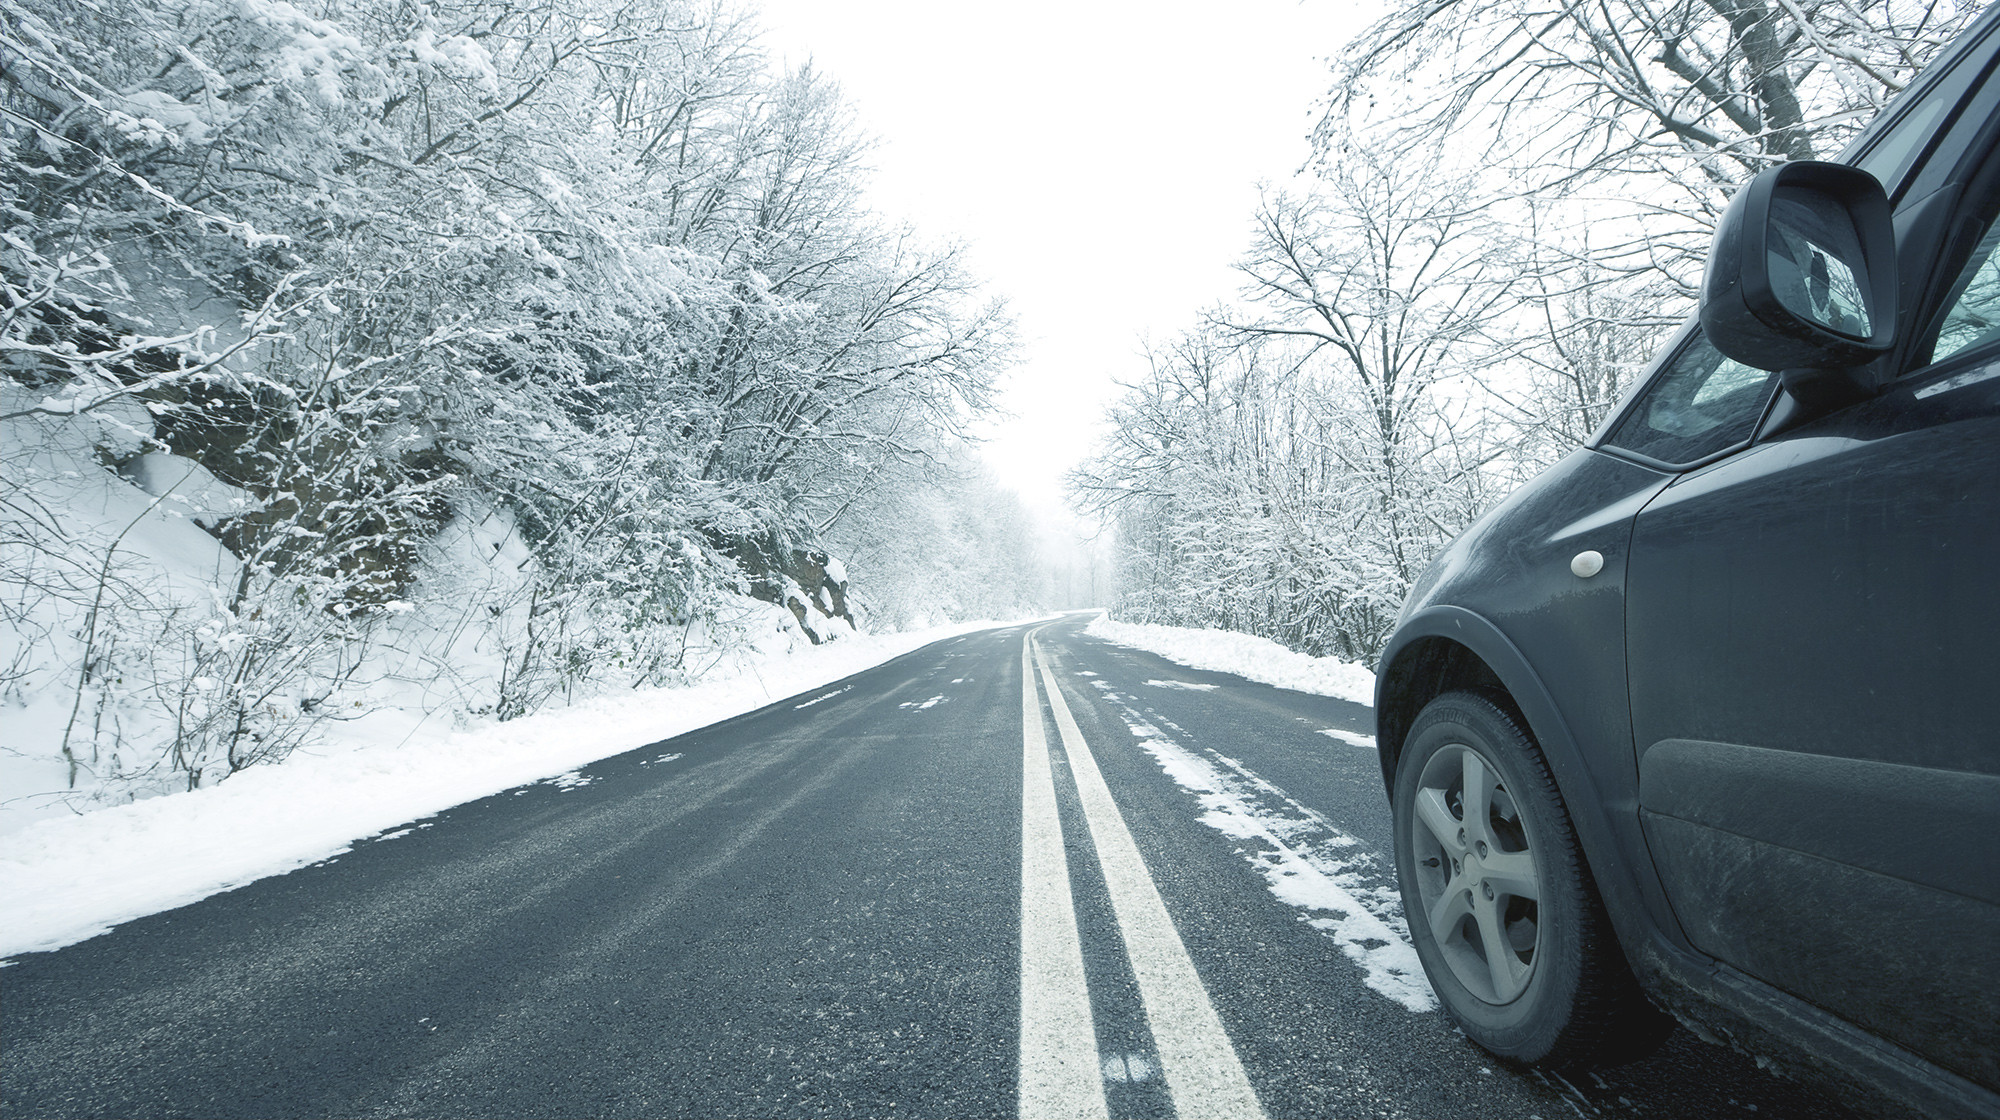  توصیه مهم برای رانندگی های ایمن در برف و یخبندان